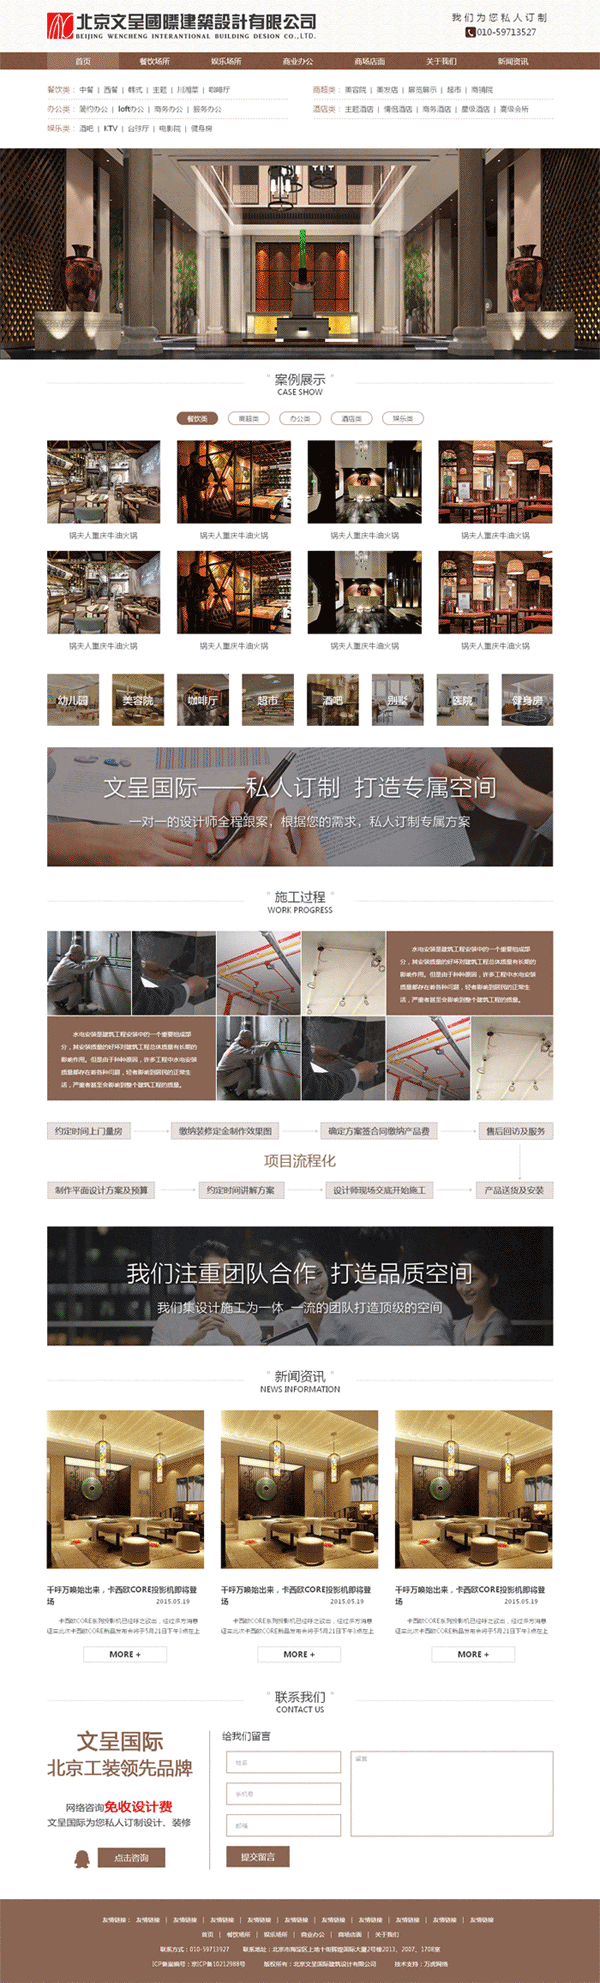 建筑装饰设计企业网站棕色大气风格的模板下载